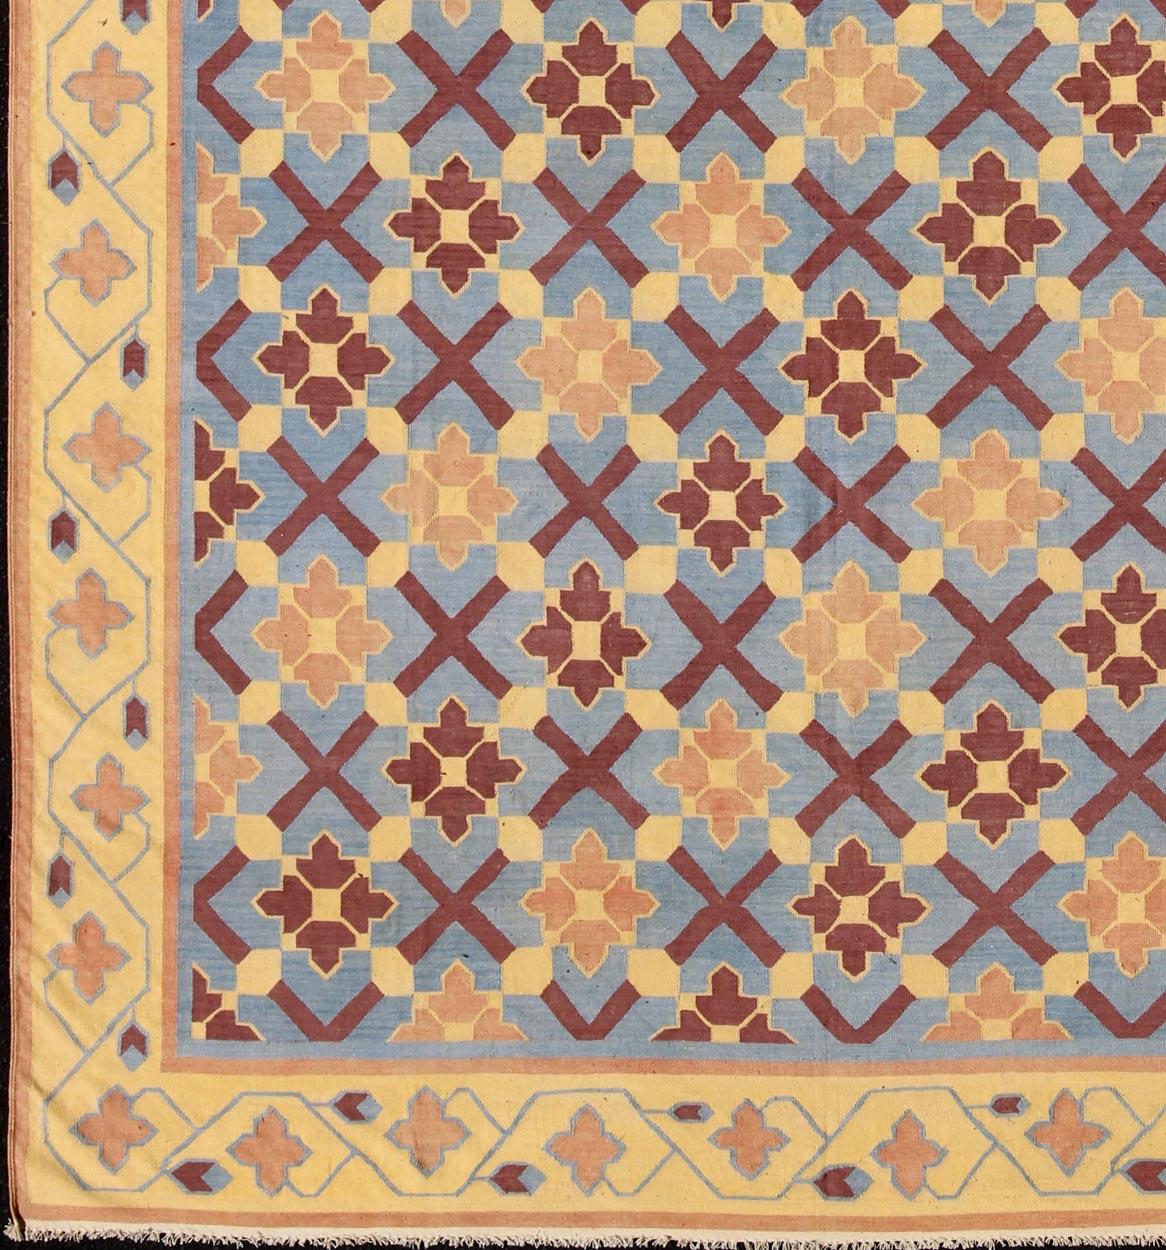 Sternmuster flach gewebt Große Baumwolle Dhurrie aus Indien Vintage Teppich, Teppich 19-0603, Herkunftsland / Typ: Indien / Dhurrie, um 1960

Dieser indische Dhurrie-Teppich im Vintage-Stil besteht aus einem Allover-Muster aus miteinander